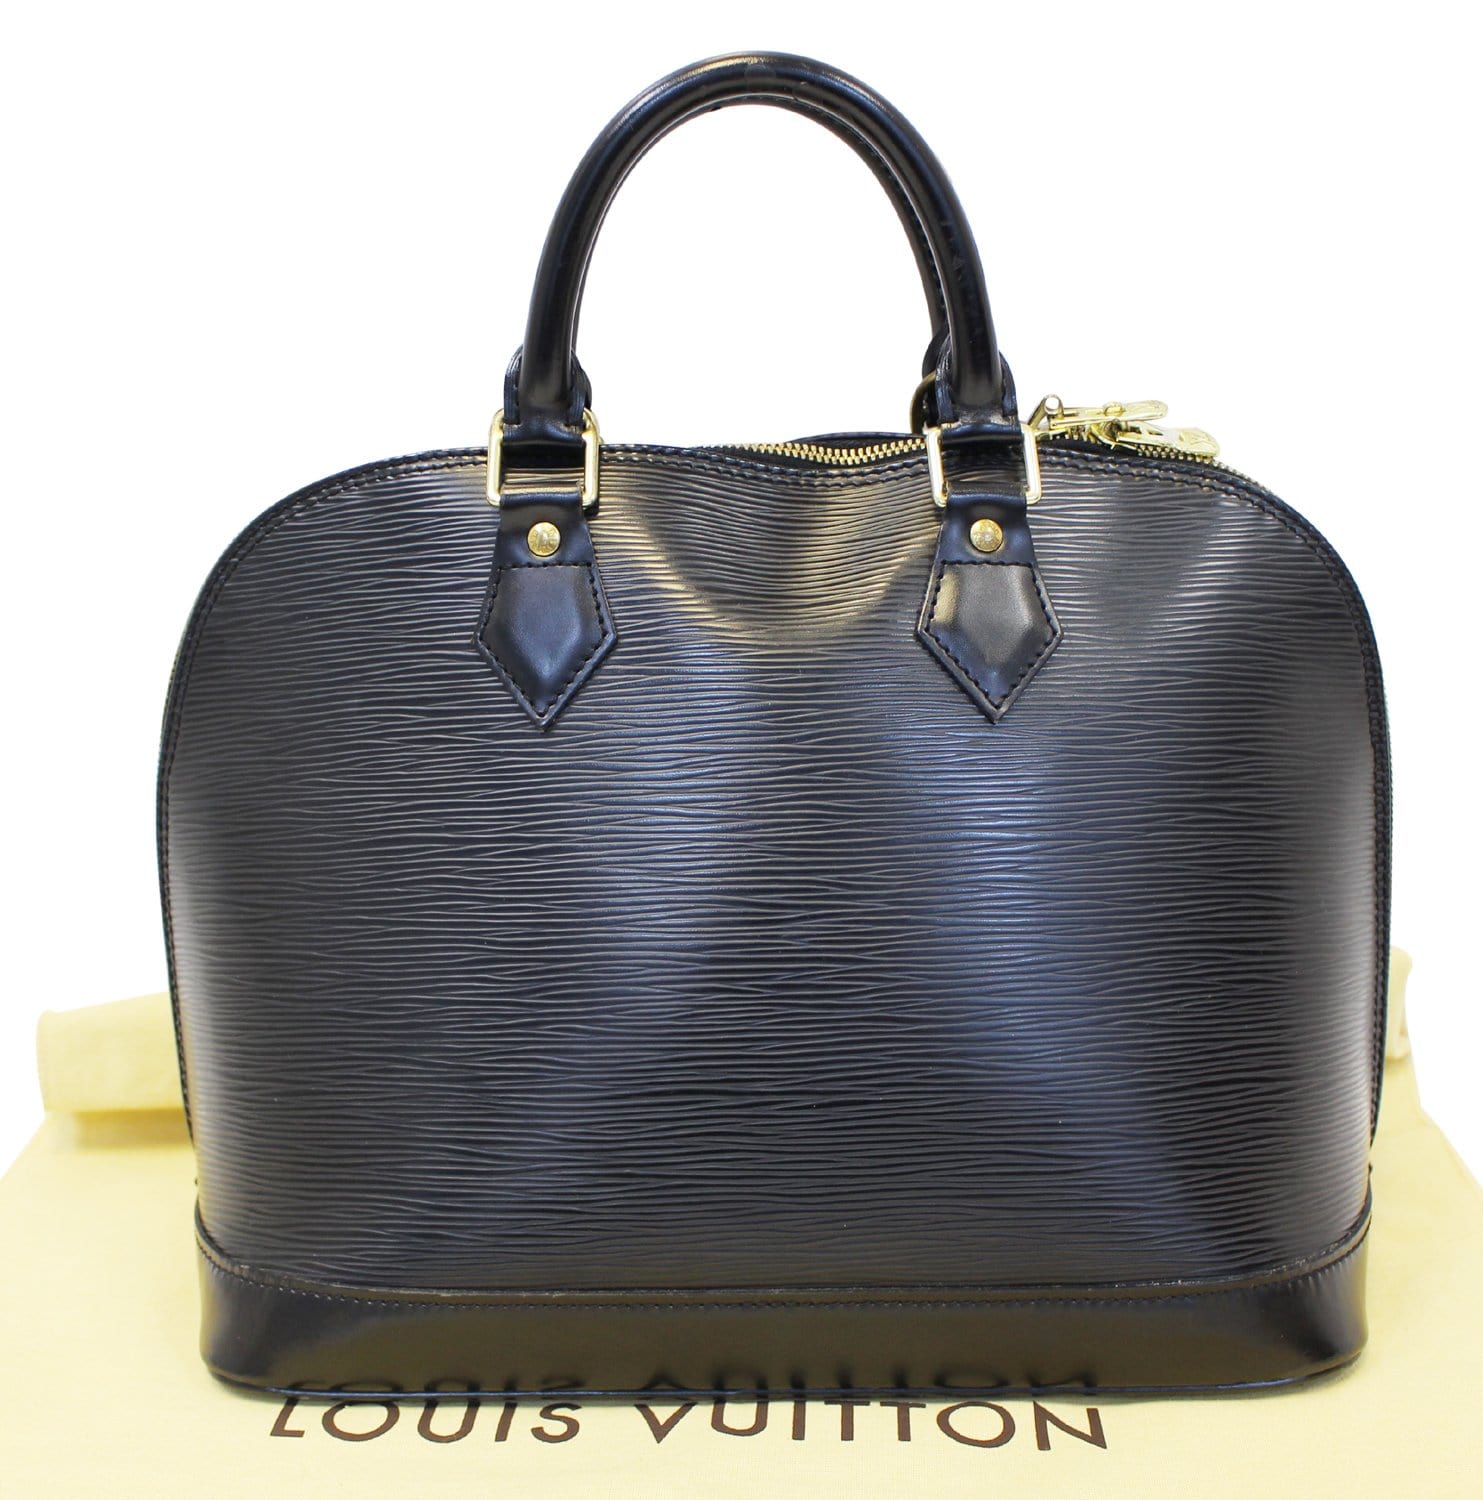 Authentic Louis Vuitton Alma Epi PM Black With Dust Bag